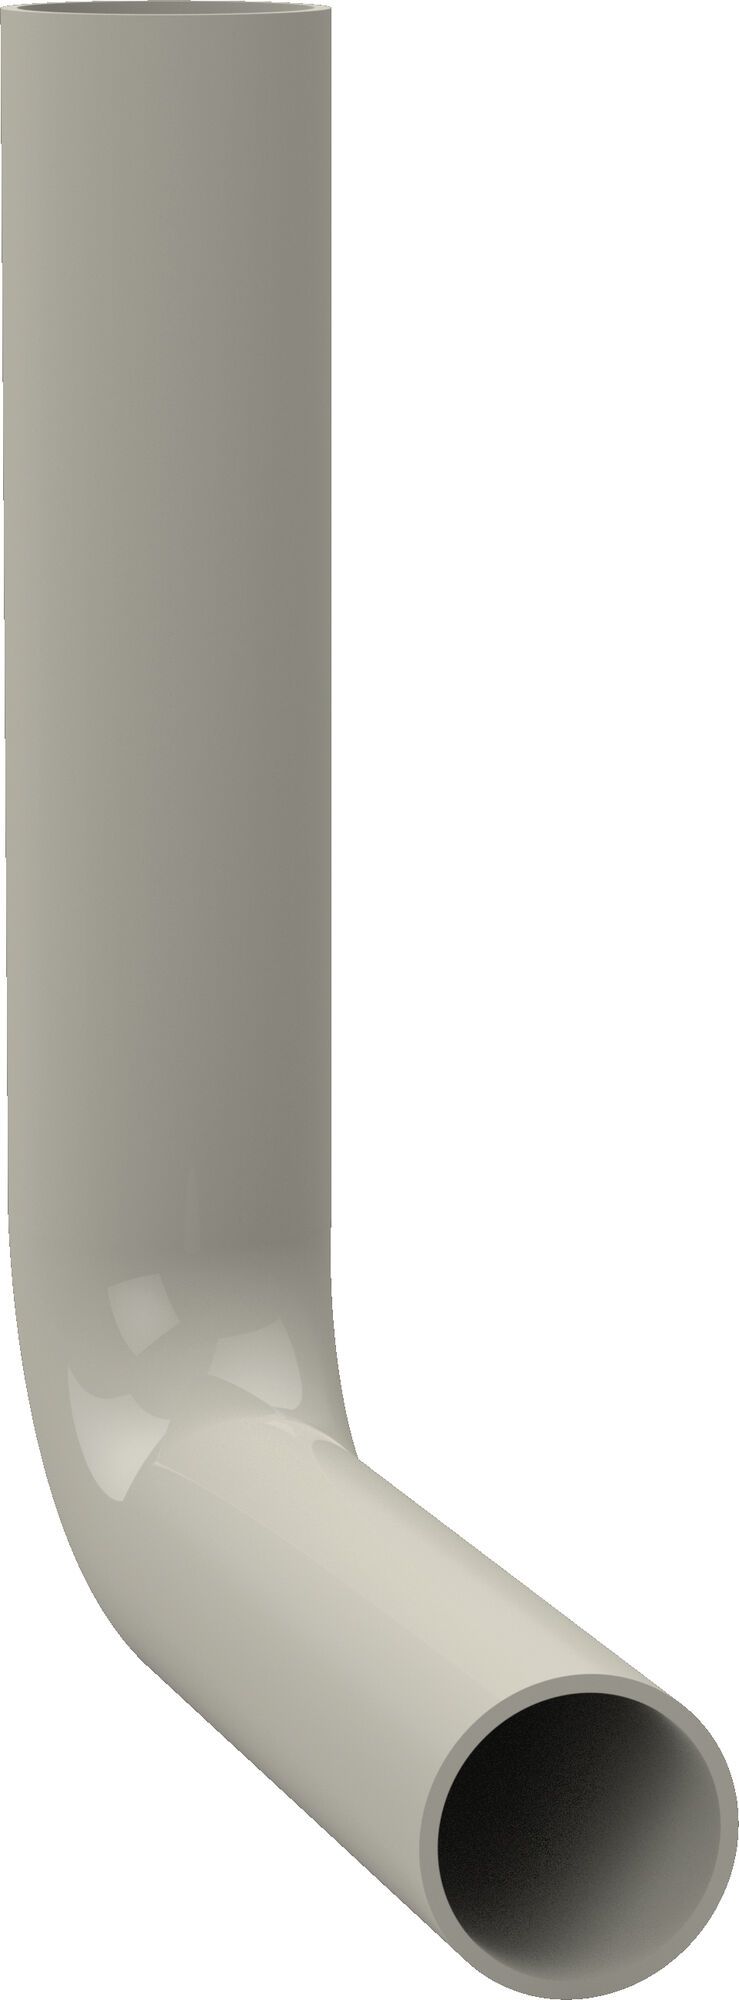 Splakovalno koleno 230 x 210 mm, pergamon